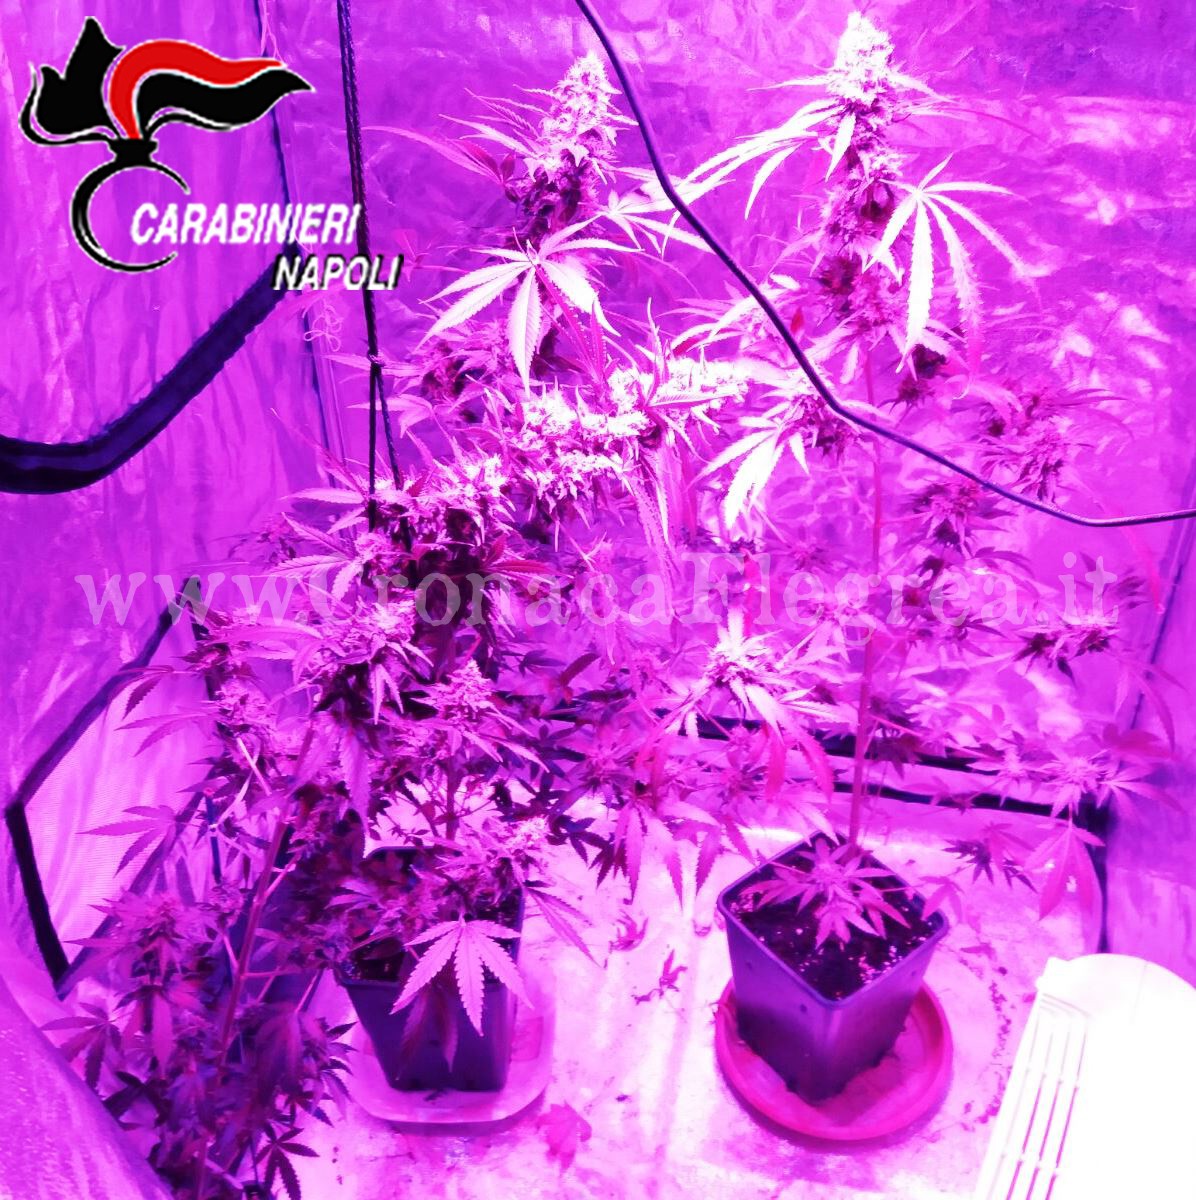 Serra per cannabis con lampade e fertilizzanti: 2 arresti